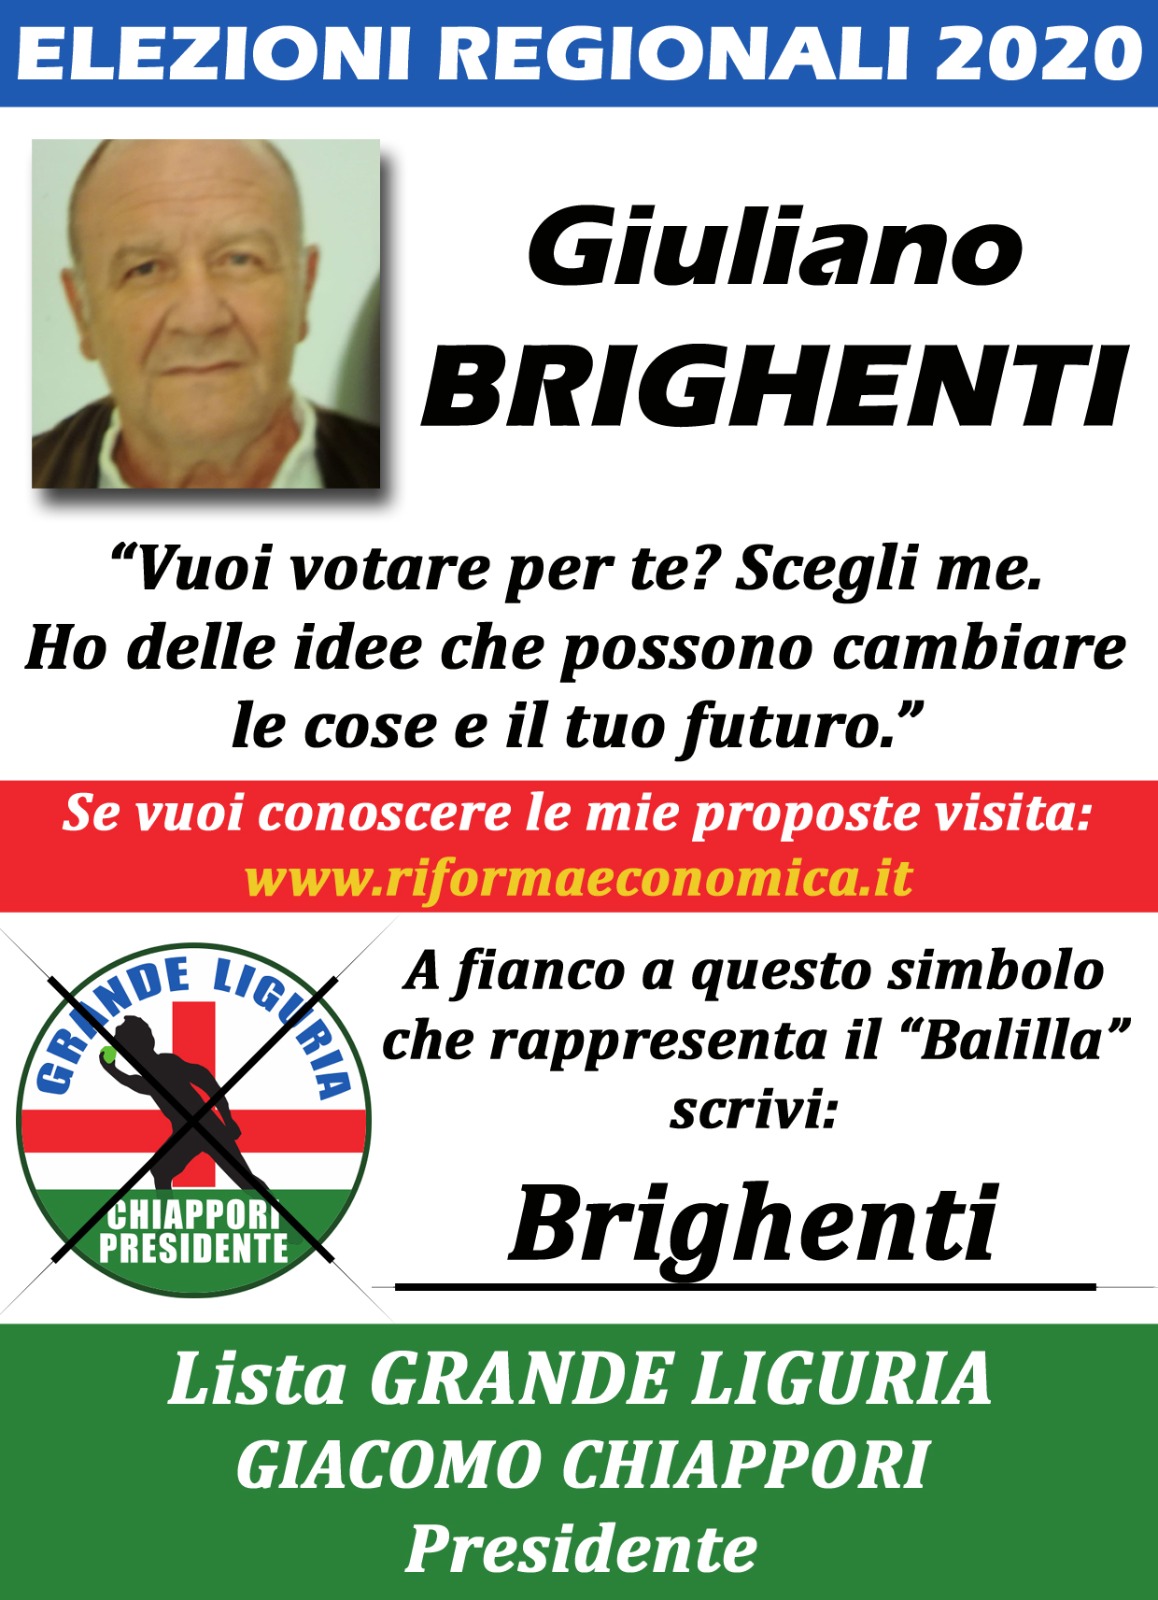 Giuliano Brighenti - volantino elezioni regionali Liguria 2020.jpeg